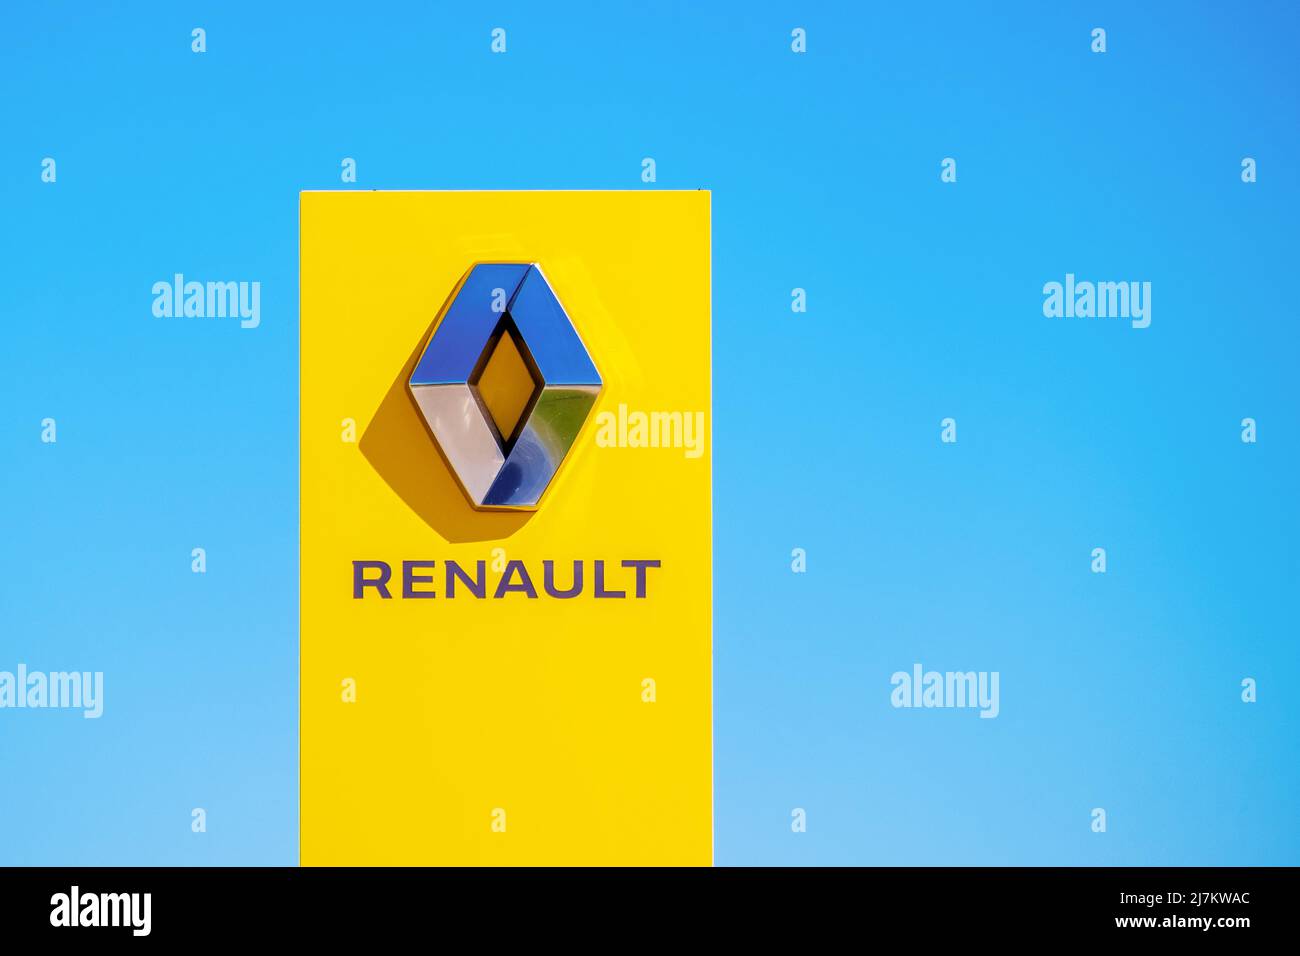 Renault. Eine rote Plakatwand mit dem Renault-Logo auf einem blauen Himmel Hintergrund. Stockfoto